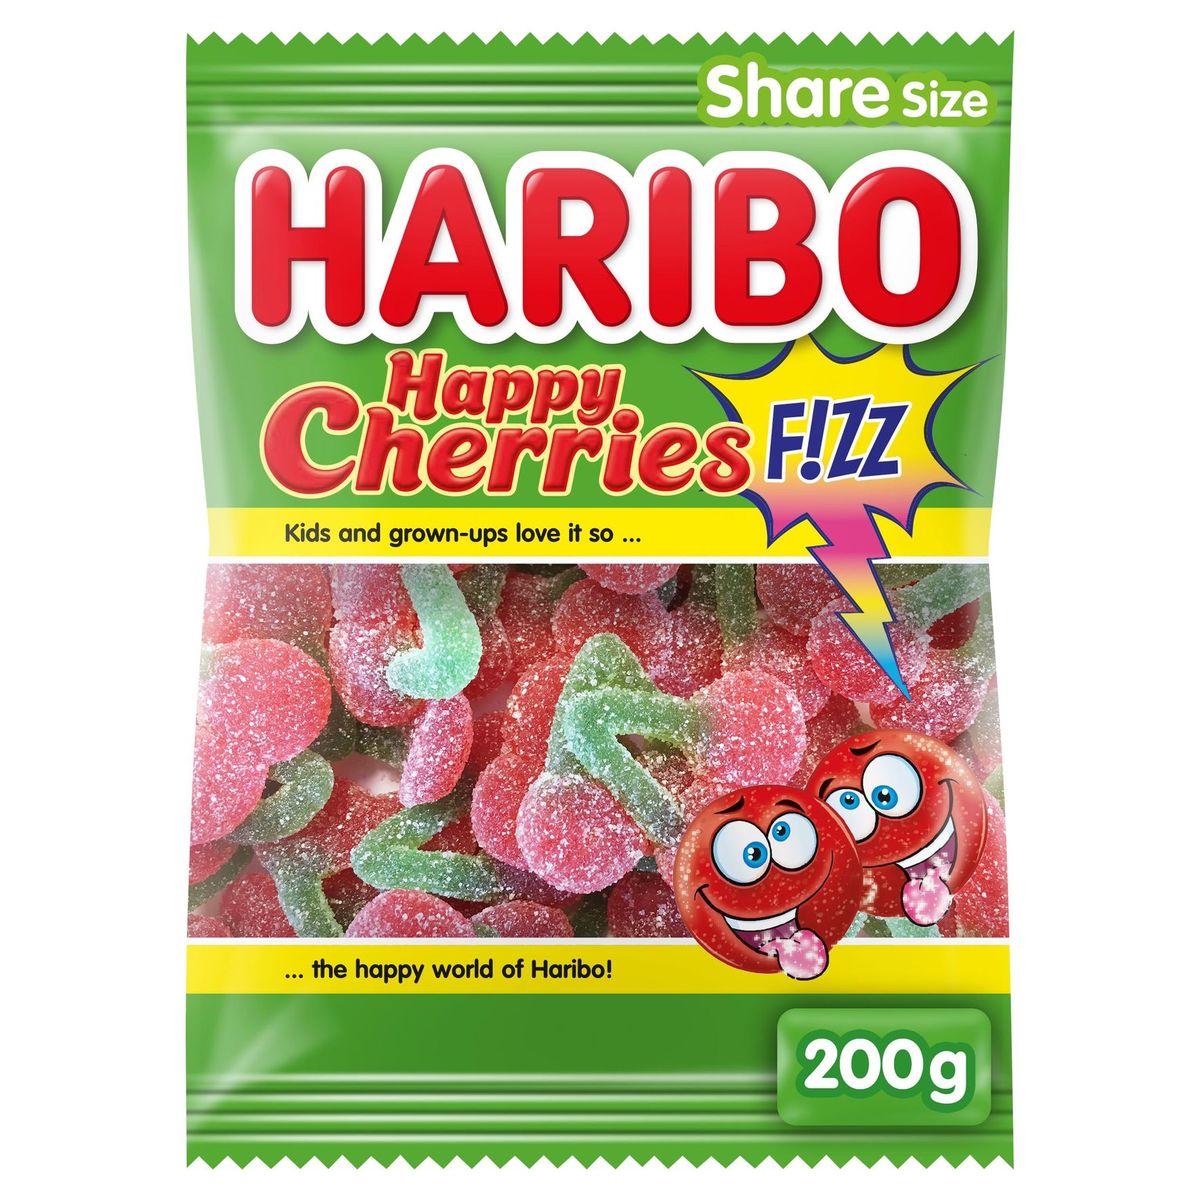 Haribo Happy Cherries F!zz Share Size 200 g